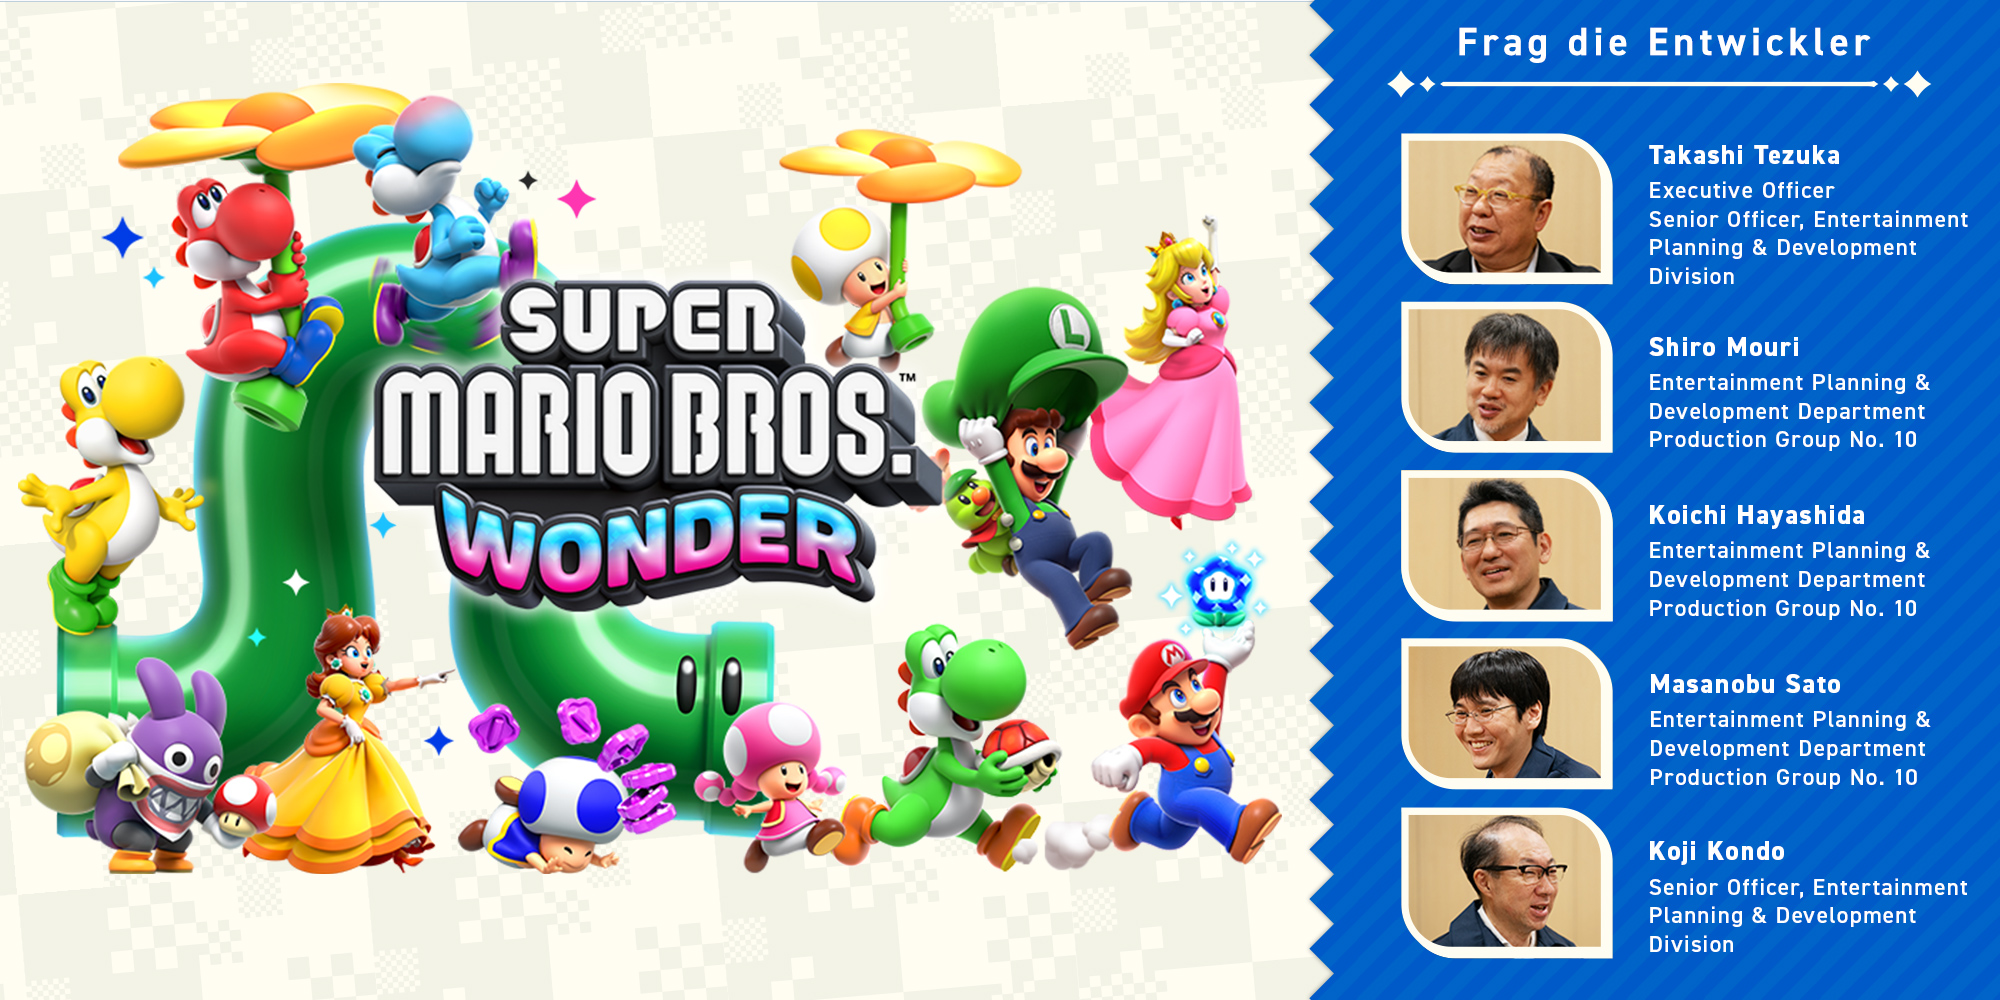 Frag die Entwickler Teil 11: Super Mario Bros. Wonder – Kapitel 3